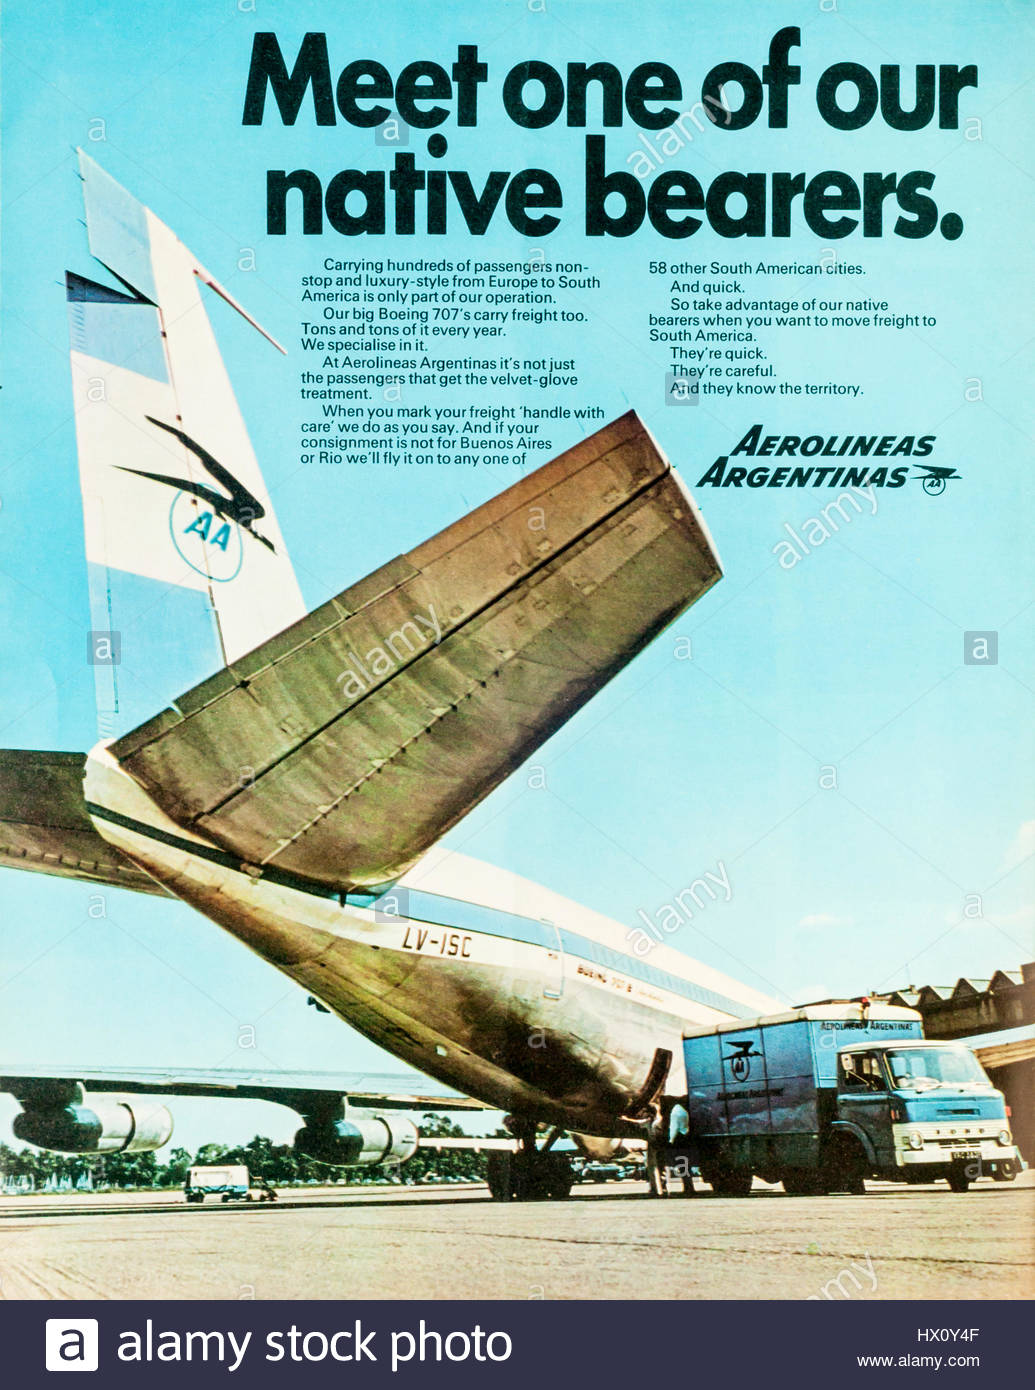 una-revista-de-1970-publicidad-el-anuncio-de-aerolineas-argentinas-aerolineas-argentinas-en ingles